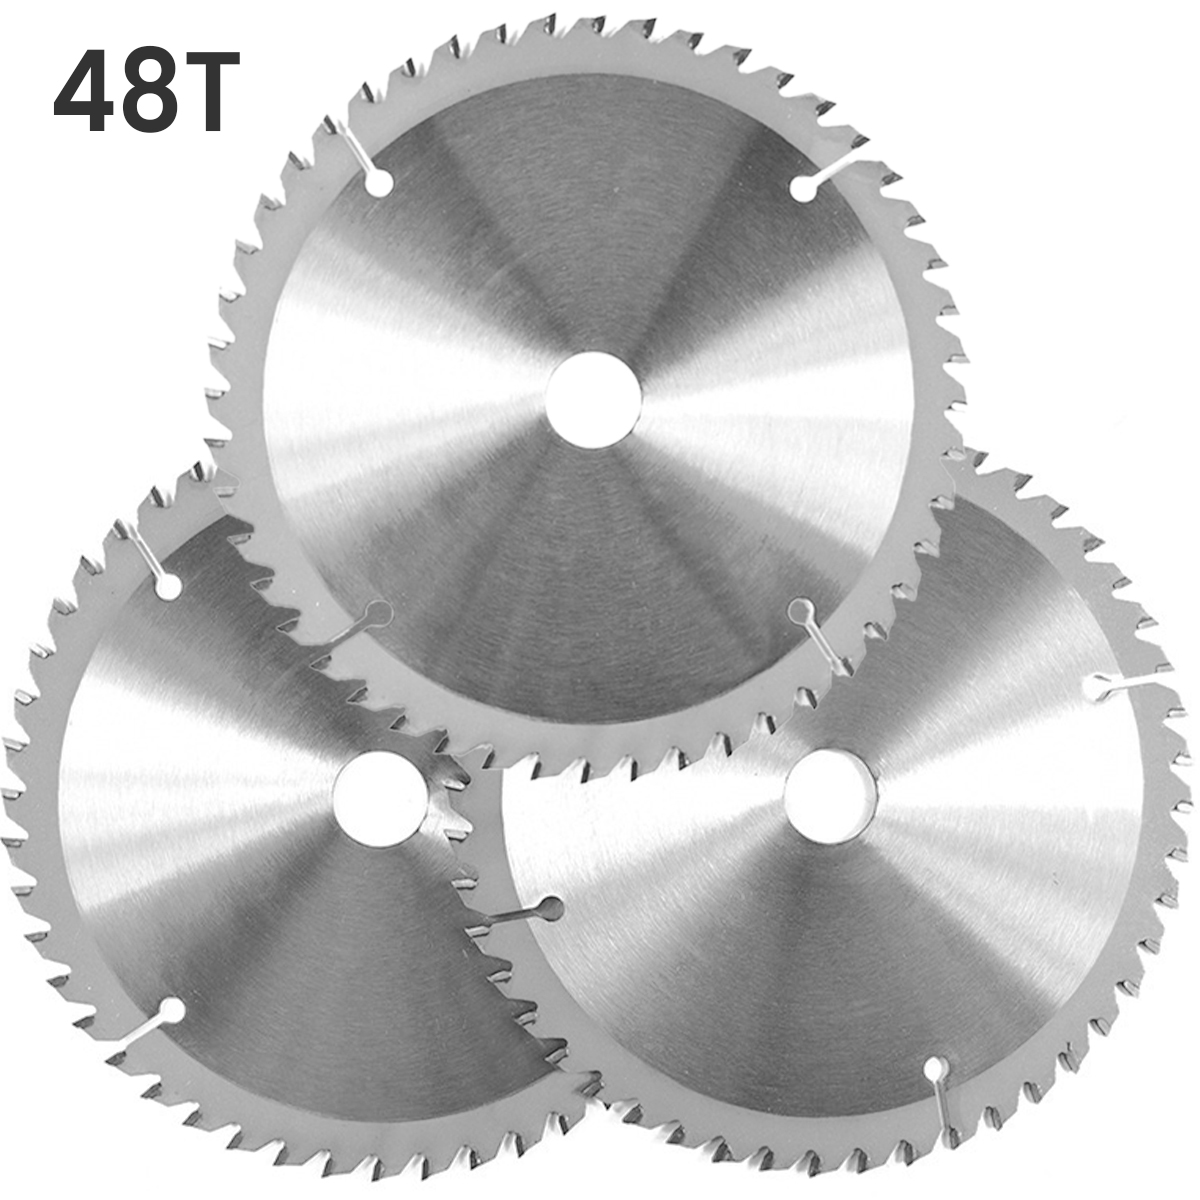 3Pcs 160Mm 48T Cirkelzaagblad Hout Snijden Wiel Disc Voor Metalen Spaanplaat Cutter Multitool Power Rotary tool Accessoires